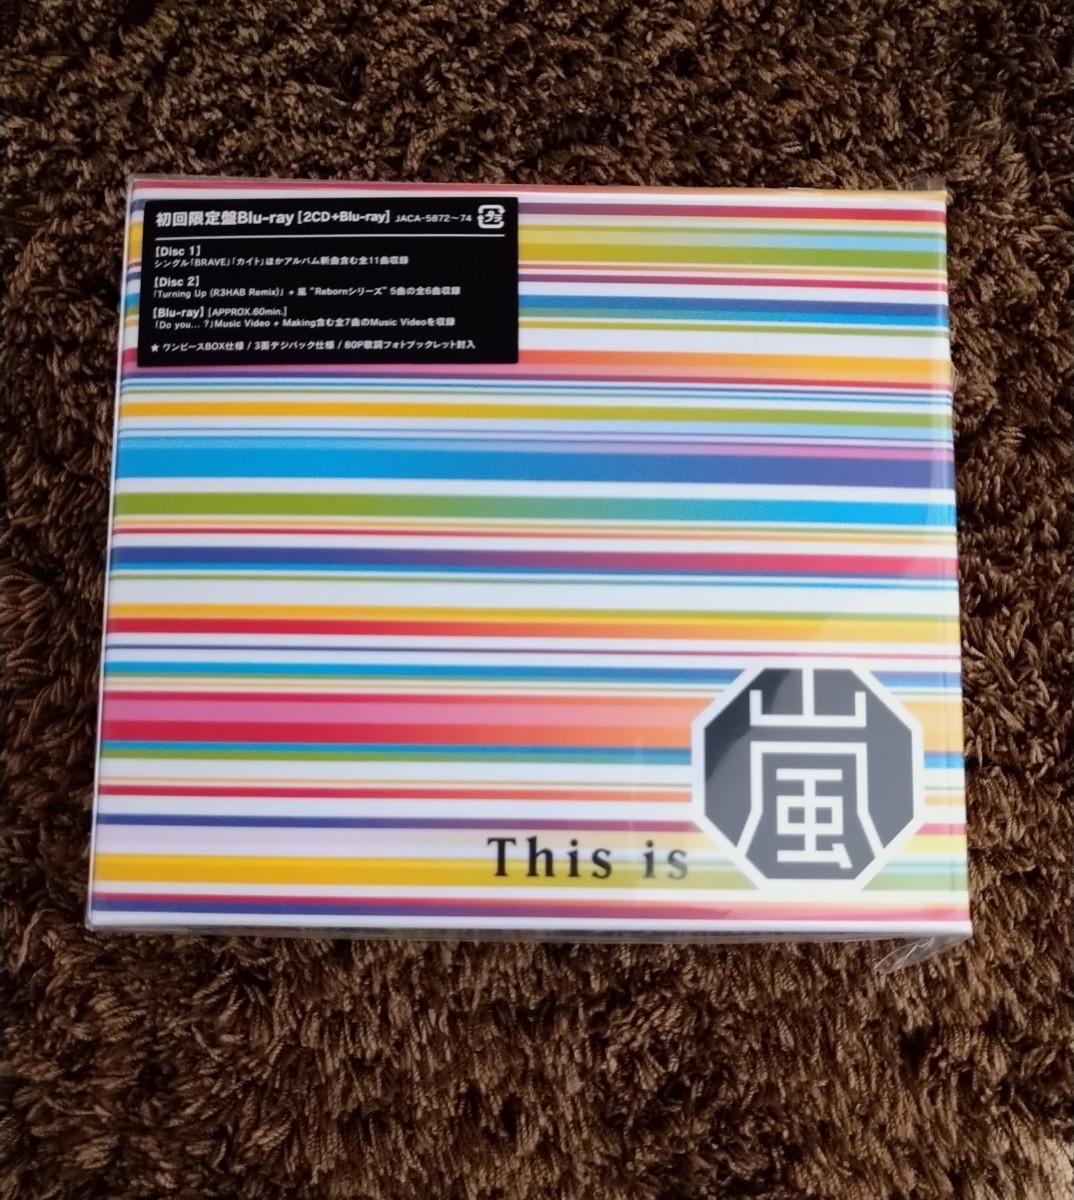 季節のおすすめ商品 即日発送可 嵐 ARASHI This is 初回限定盤 2CD+Blu